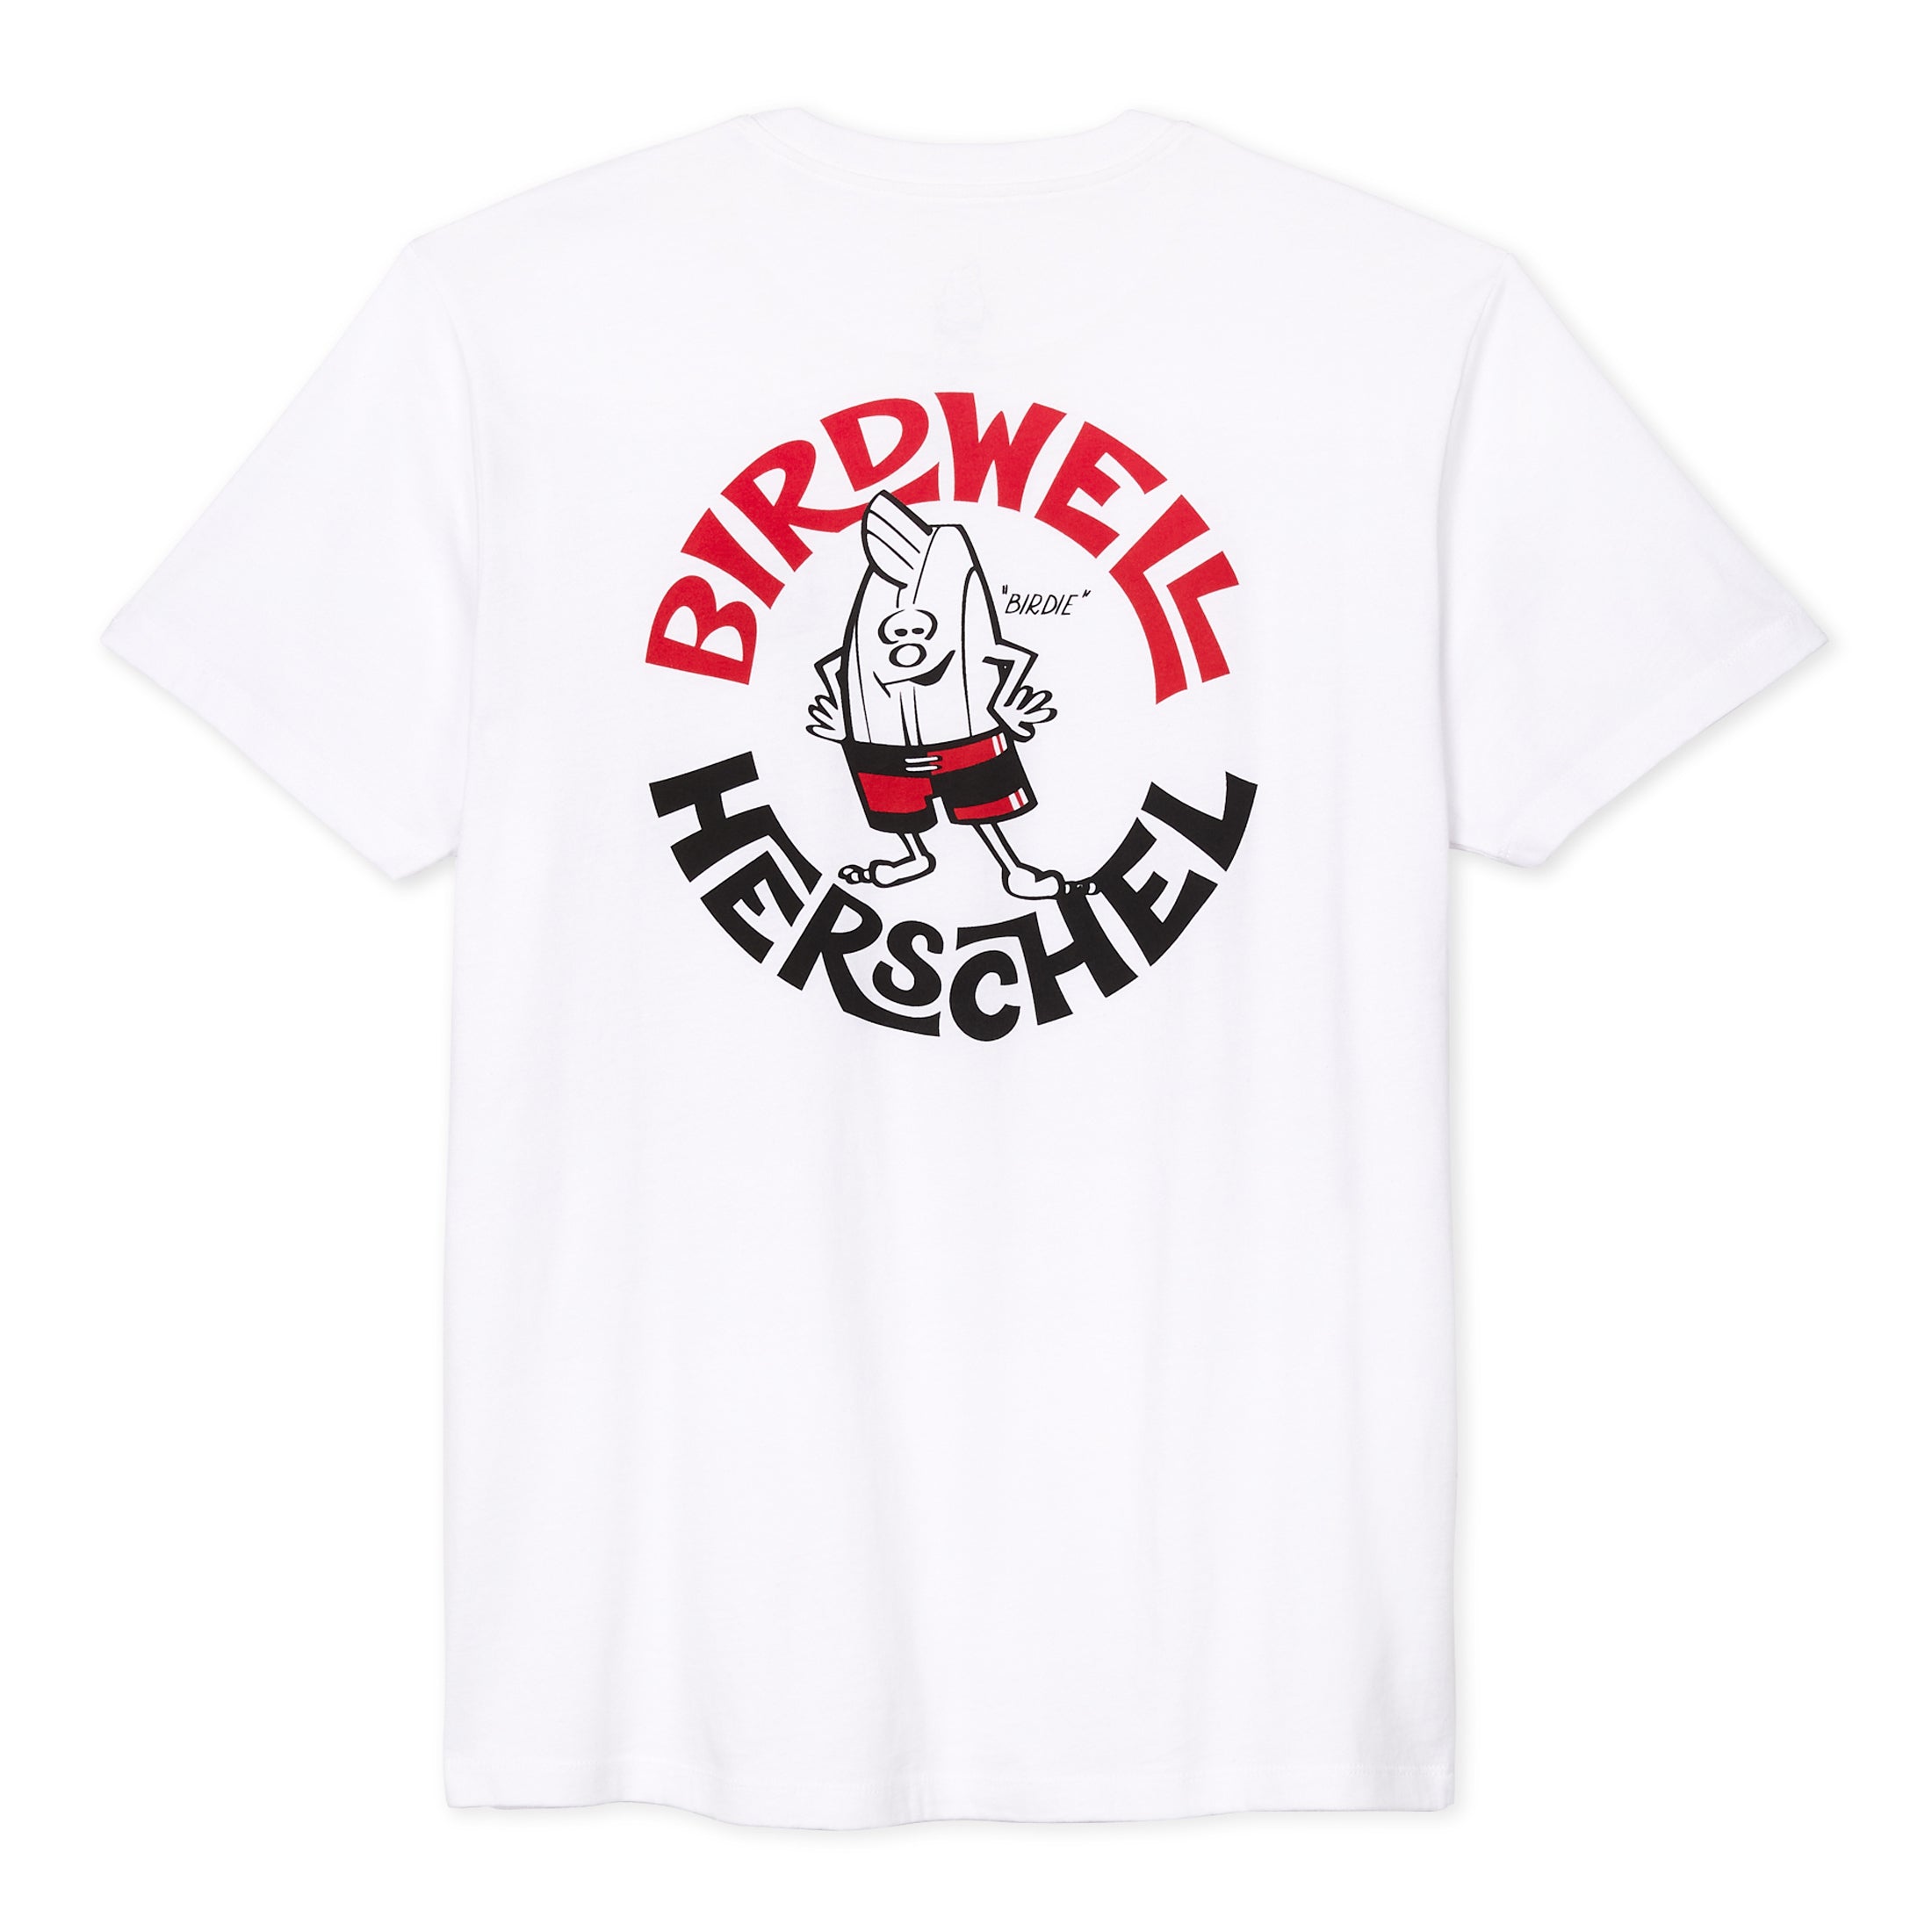 Herschel x Birdwell Short Sleeve T-Shirt - White